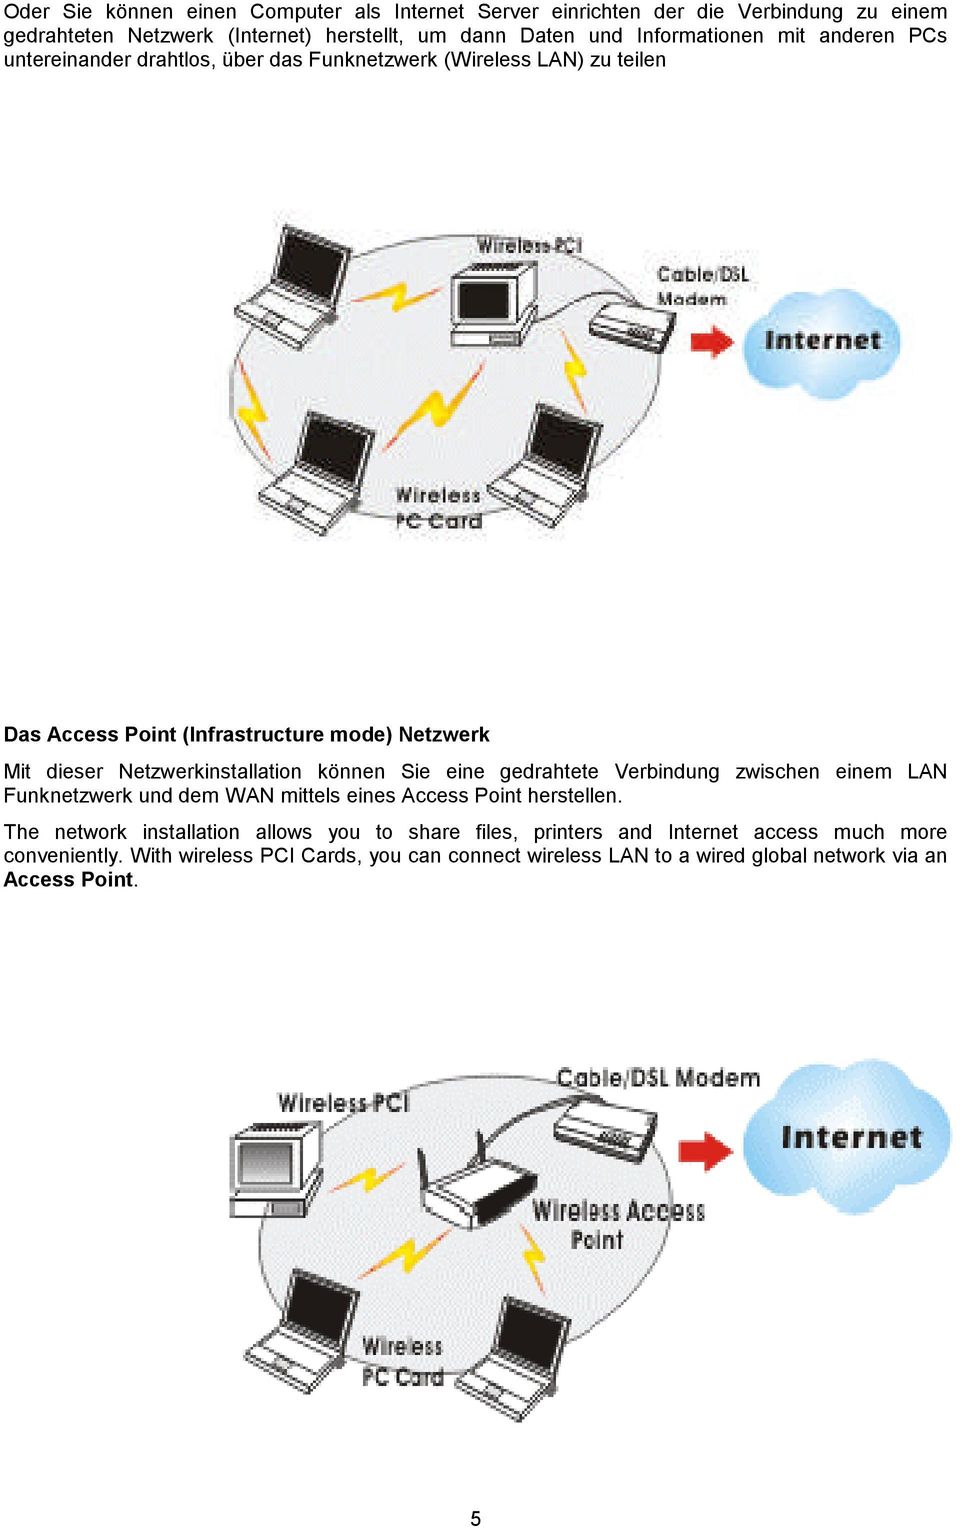 Netzwerkinstallation können Sie eine gedrahtete Verbindung zwischen einem LAN Funknetzwerk und dem WAN mittels eines Access Point herstellen.